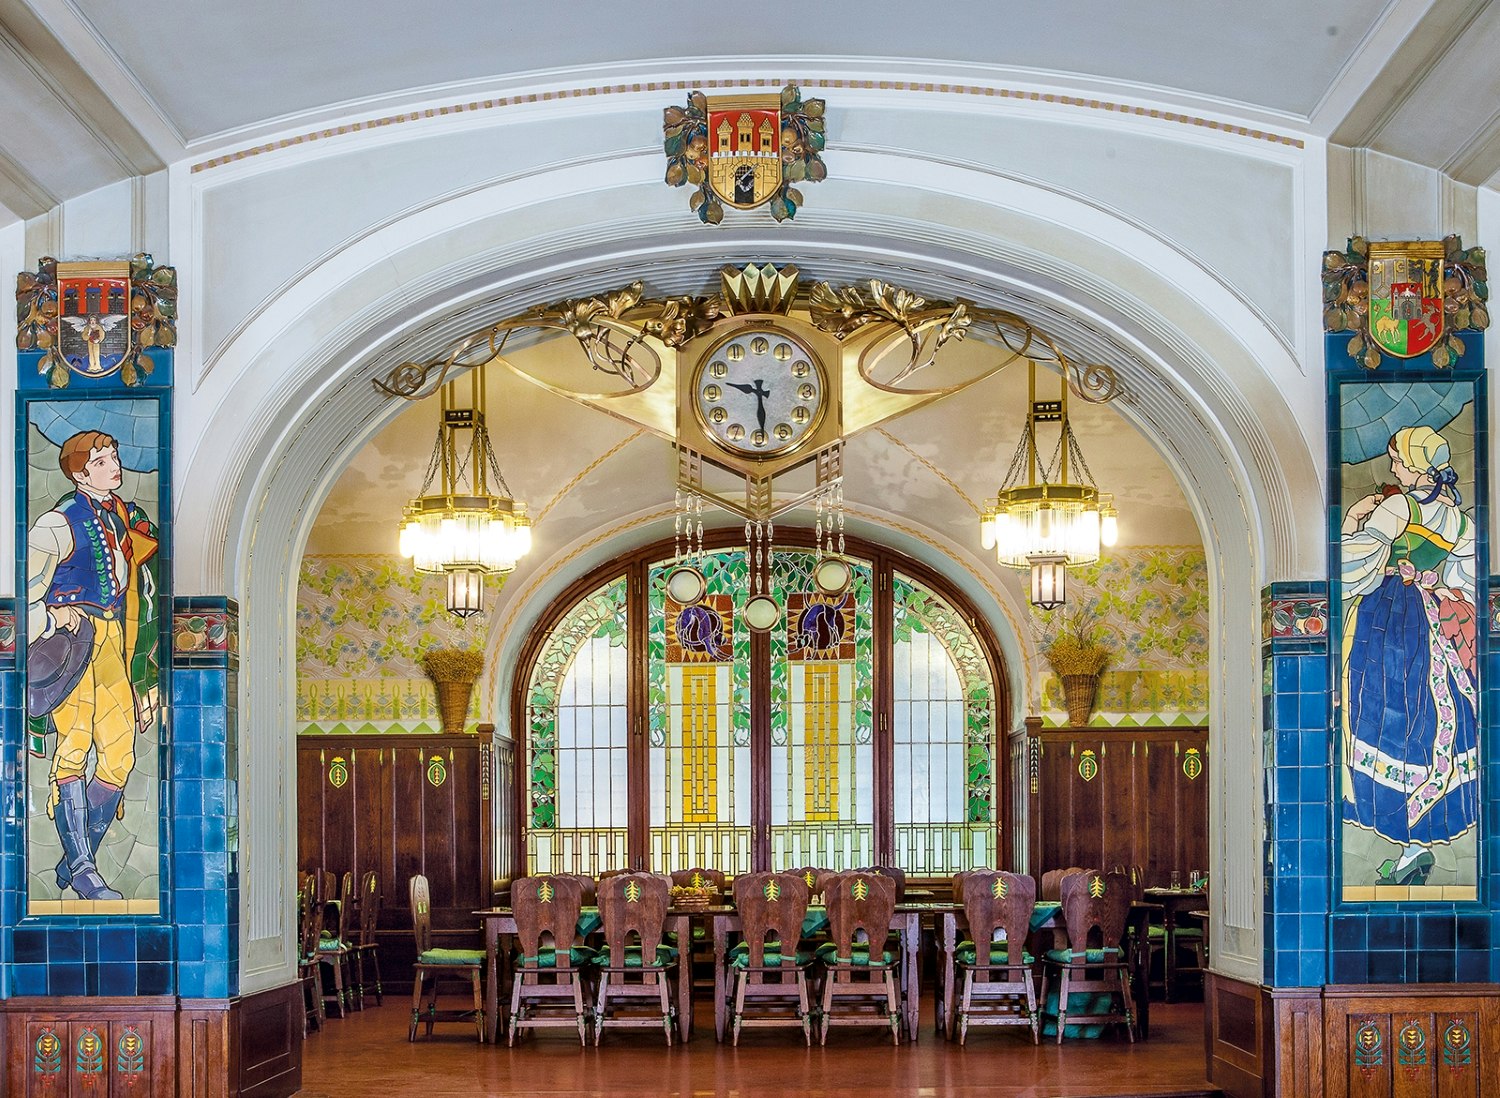 The ornate tiled interior of the Plzenska restaurant